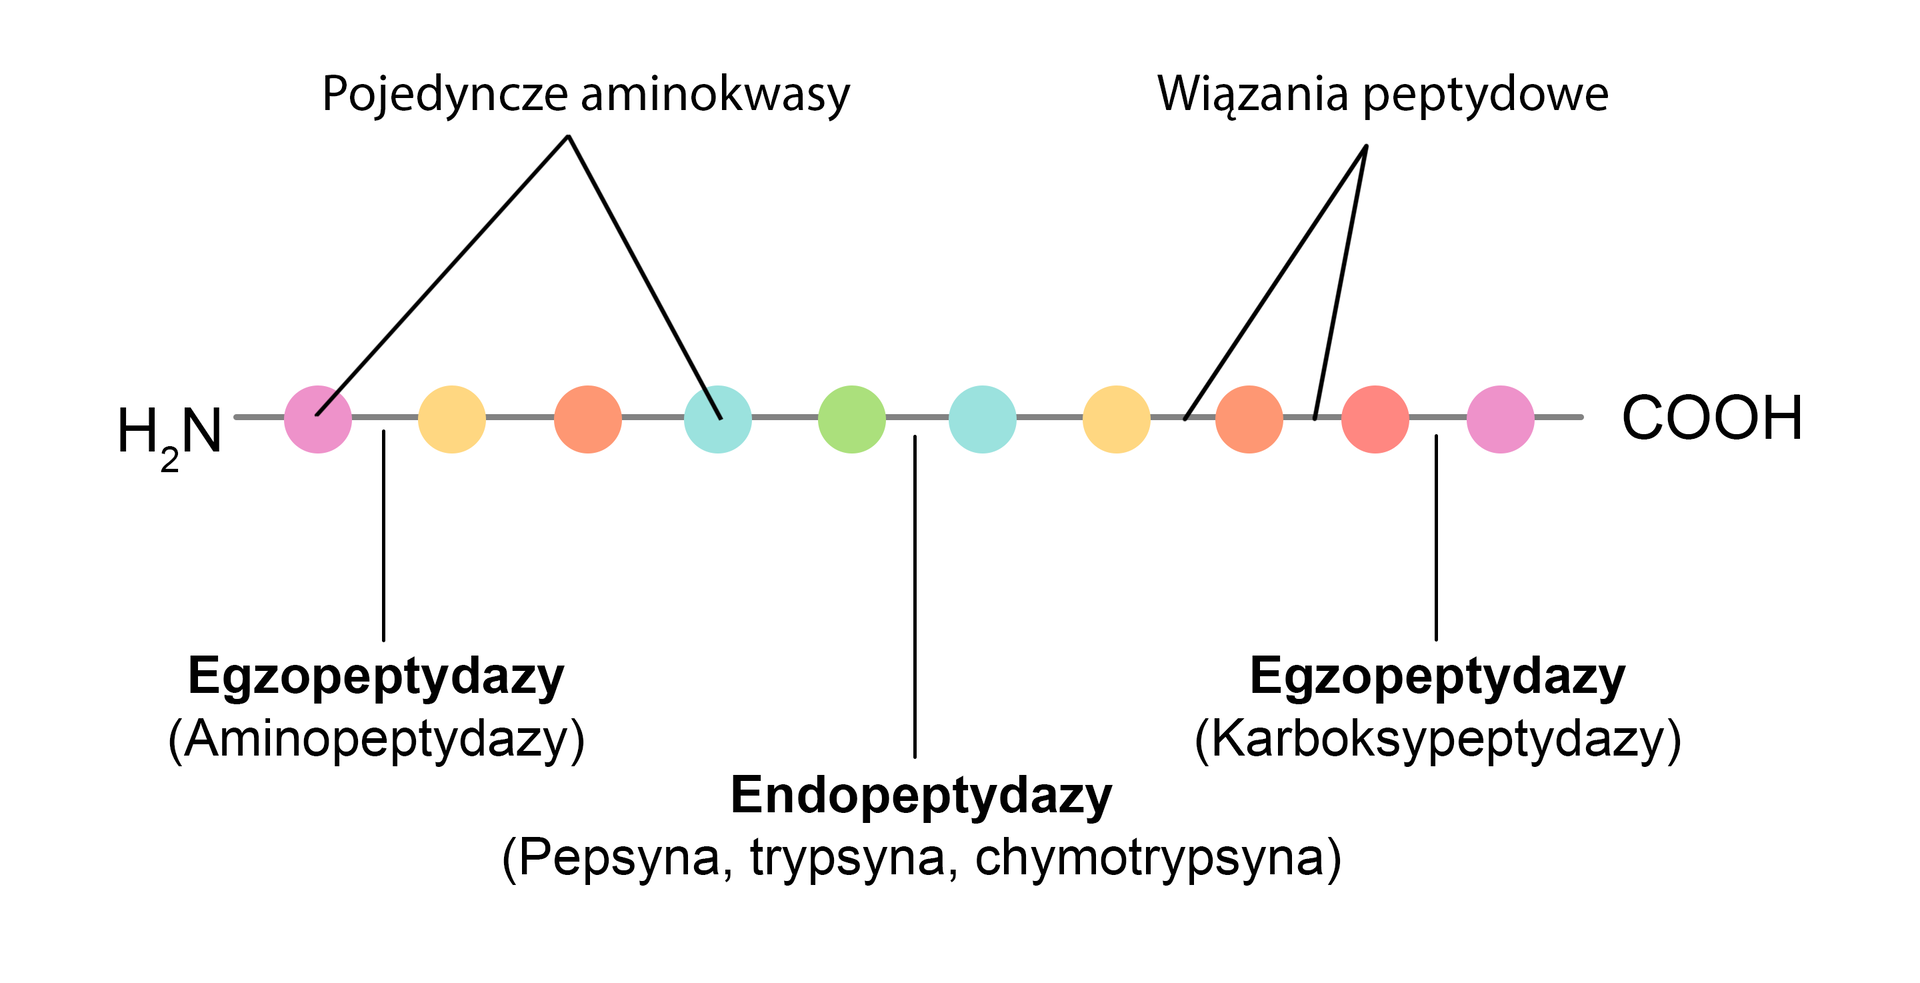 Schemat przedstawia łańcuchy wiązania peptydowego ulegającego hydrolizie.  Na początku łańcucha mamy zapis H2N, dalej łańcuch składa się z pojedynczych amojokowasów połączonych wiązania peptydowymi. Kolejno oznaczono: egzopeptydazy (aminopeptydazy), endopeptydazy (pepsyna, trypsyna, chymotrypsyna), egzopeptydazy (karboksypeptydazy). Łańcuch kończy się zapisem COOH.